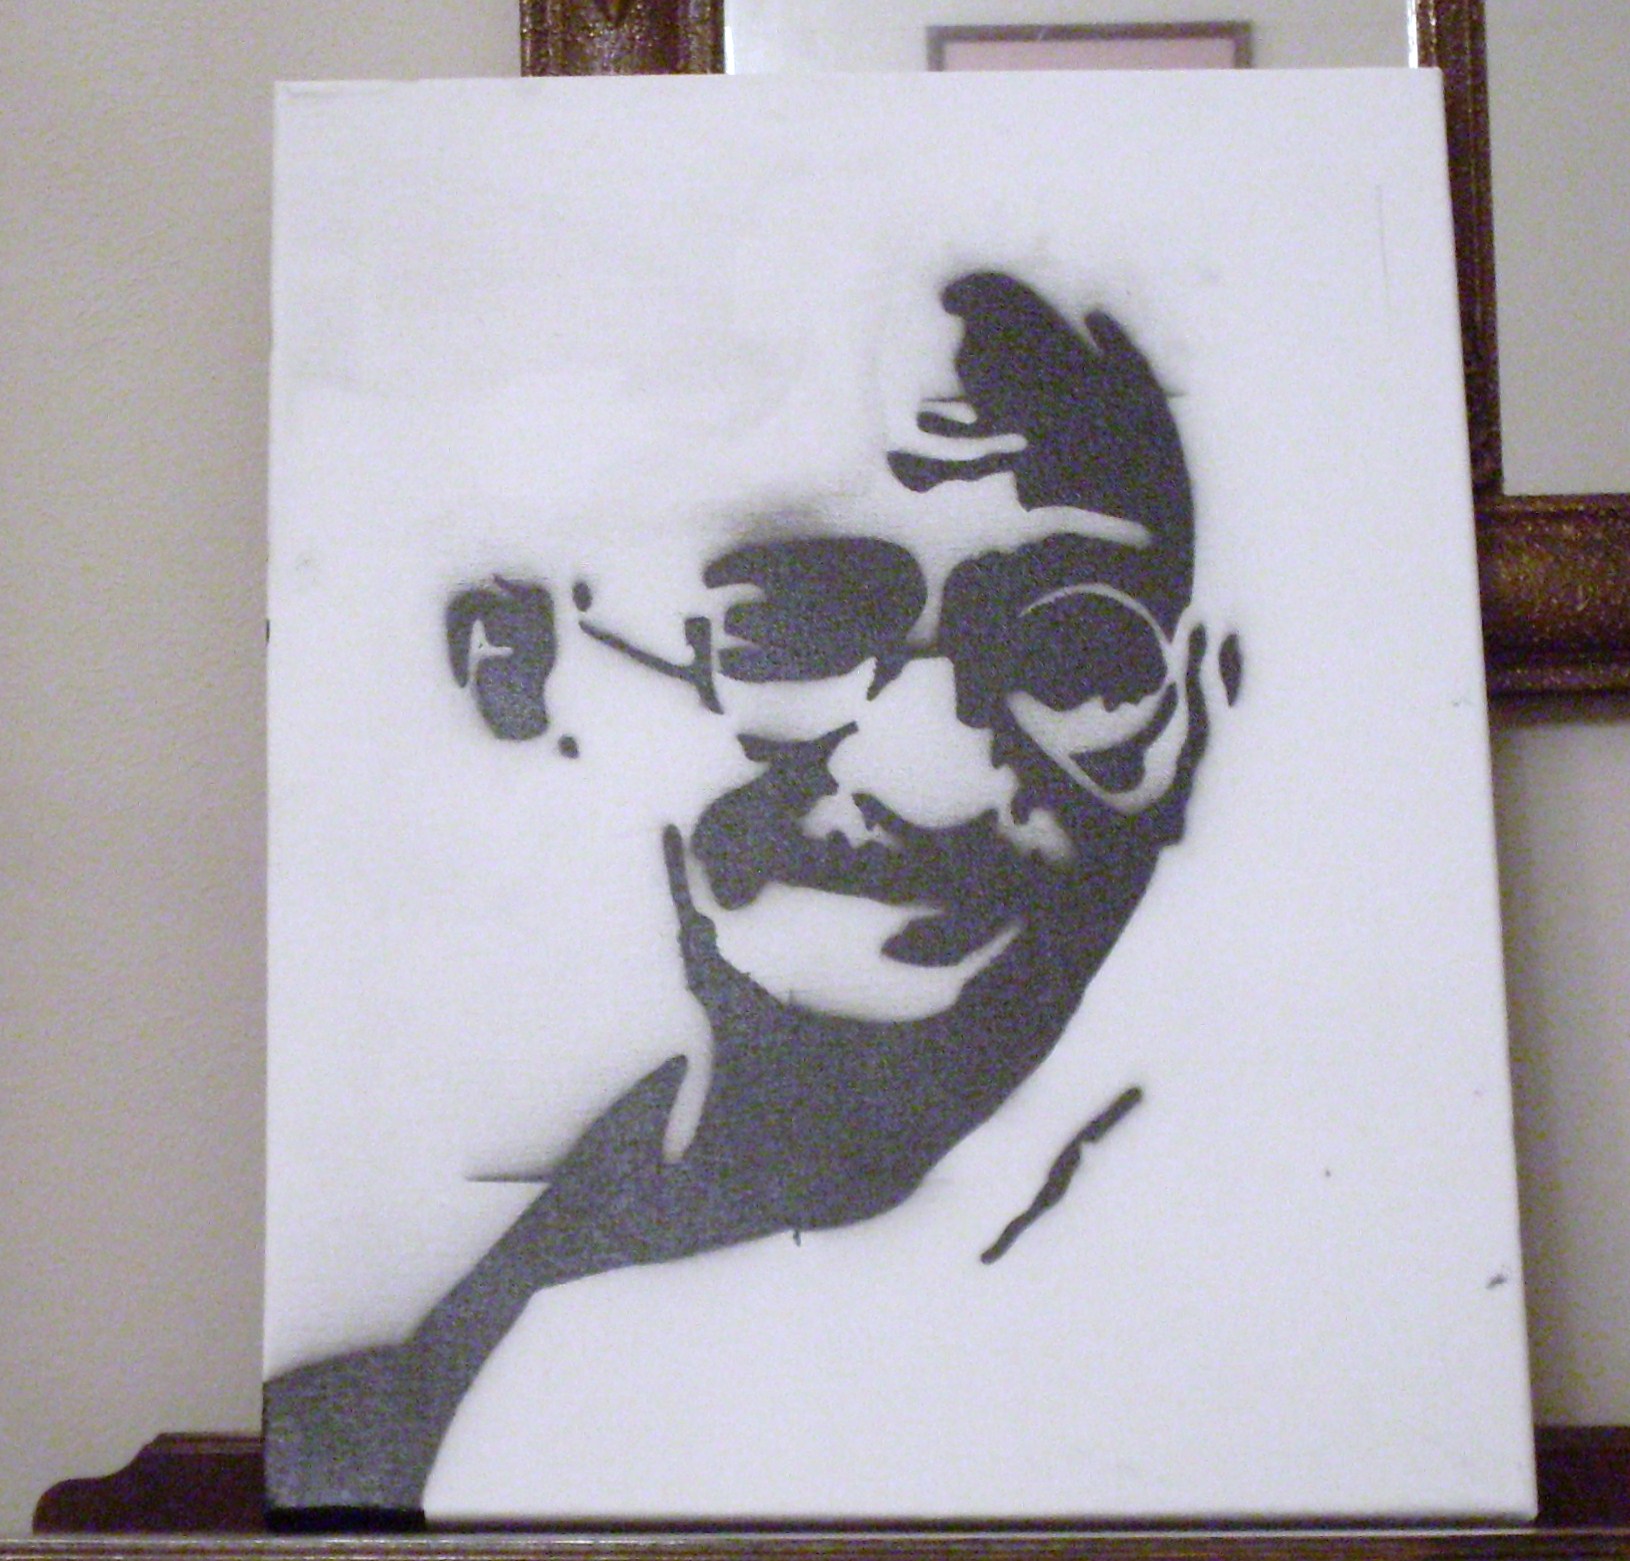 Gandhi_Stencil_by_brianjzug.jpg